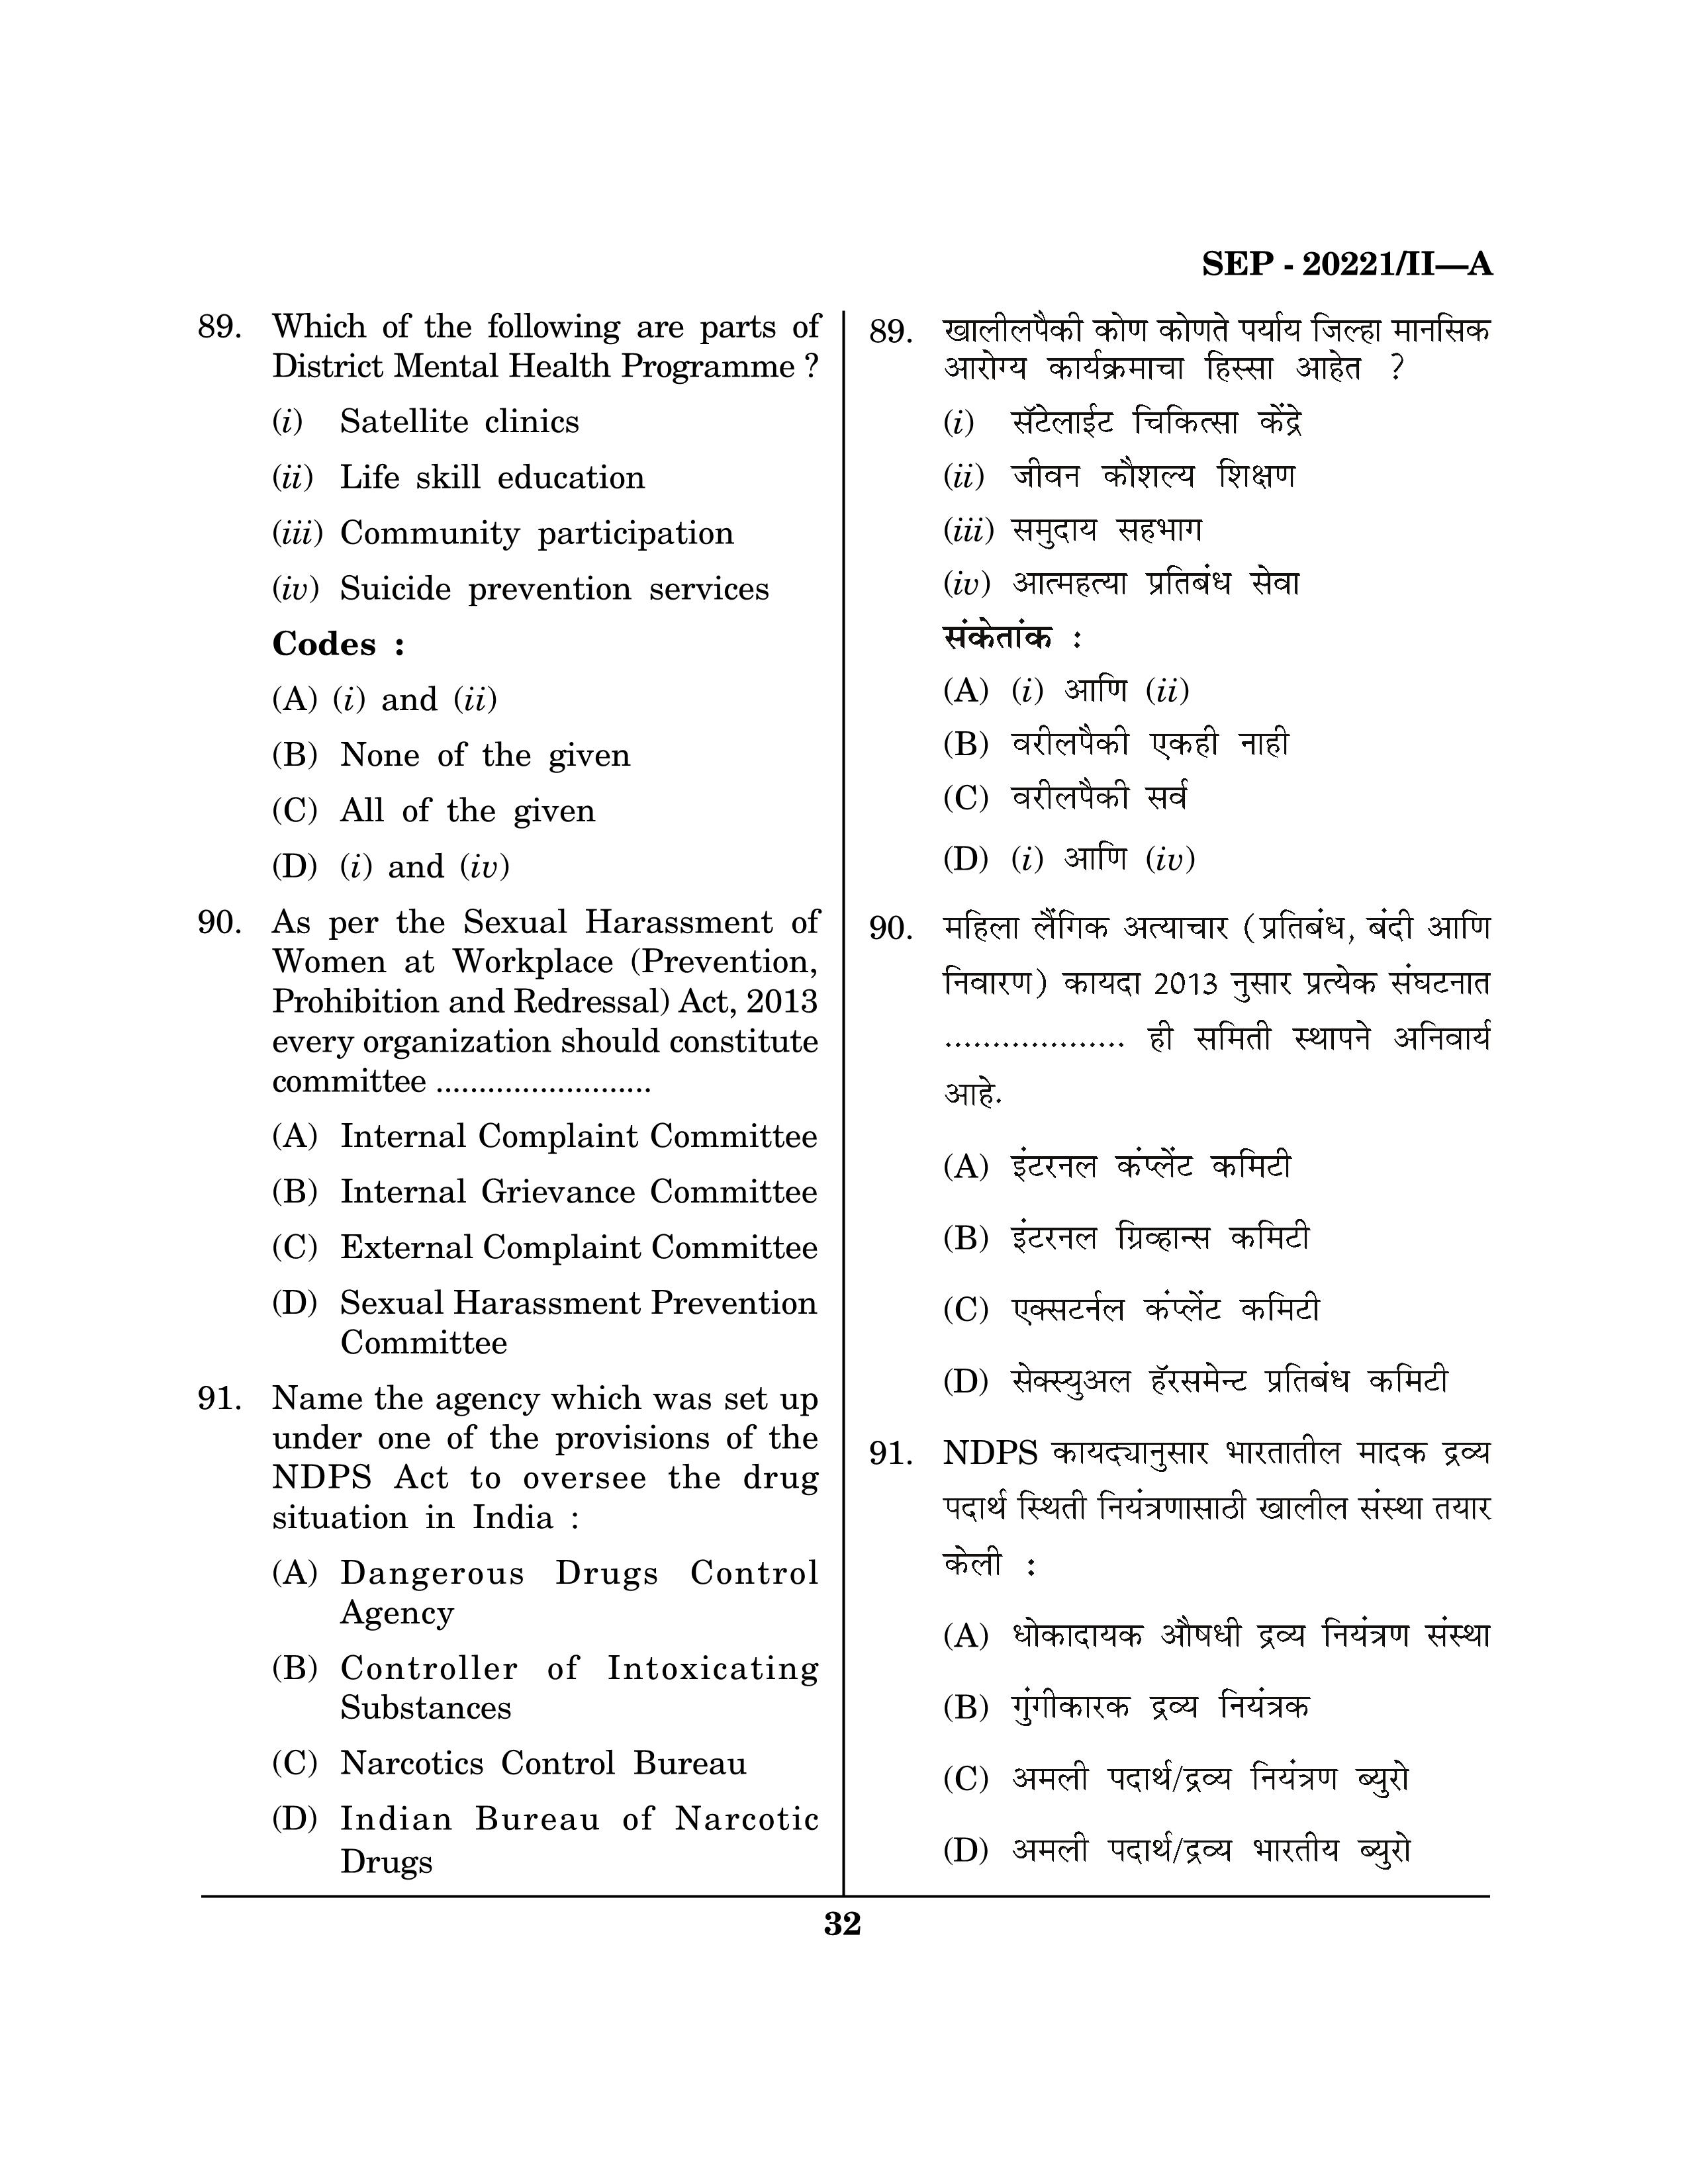 Maharashtra SET Social Work Exam Question Paper September 2021 31